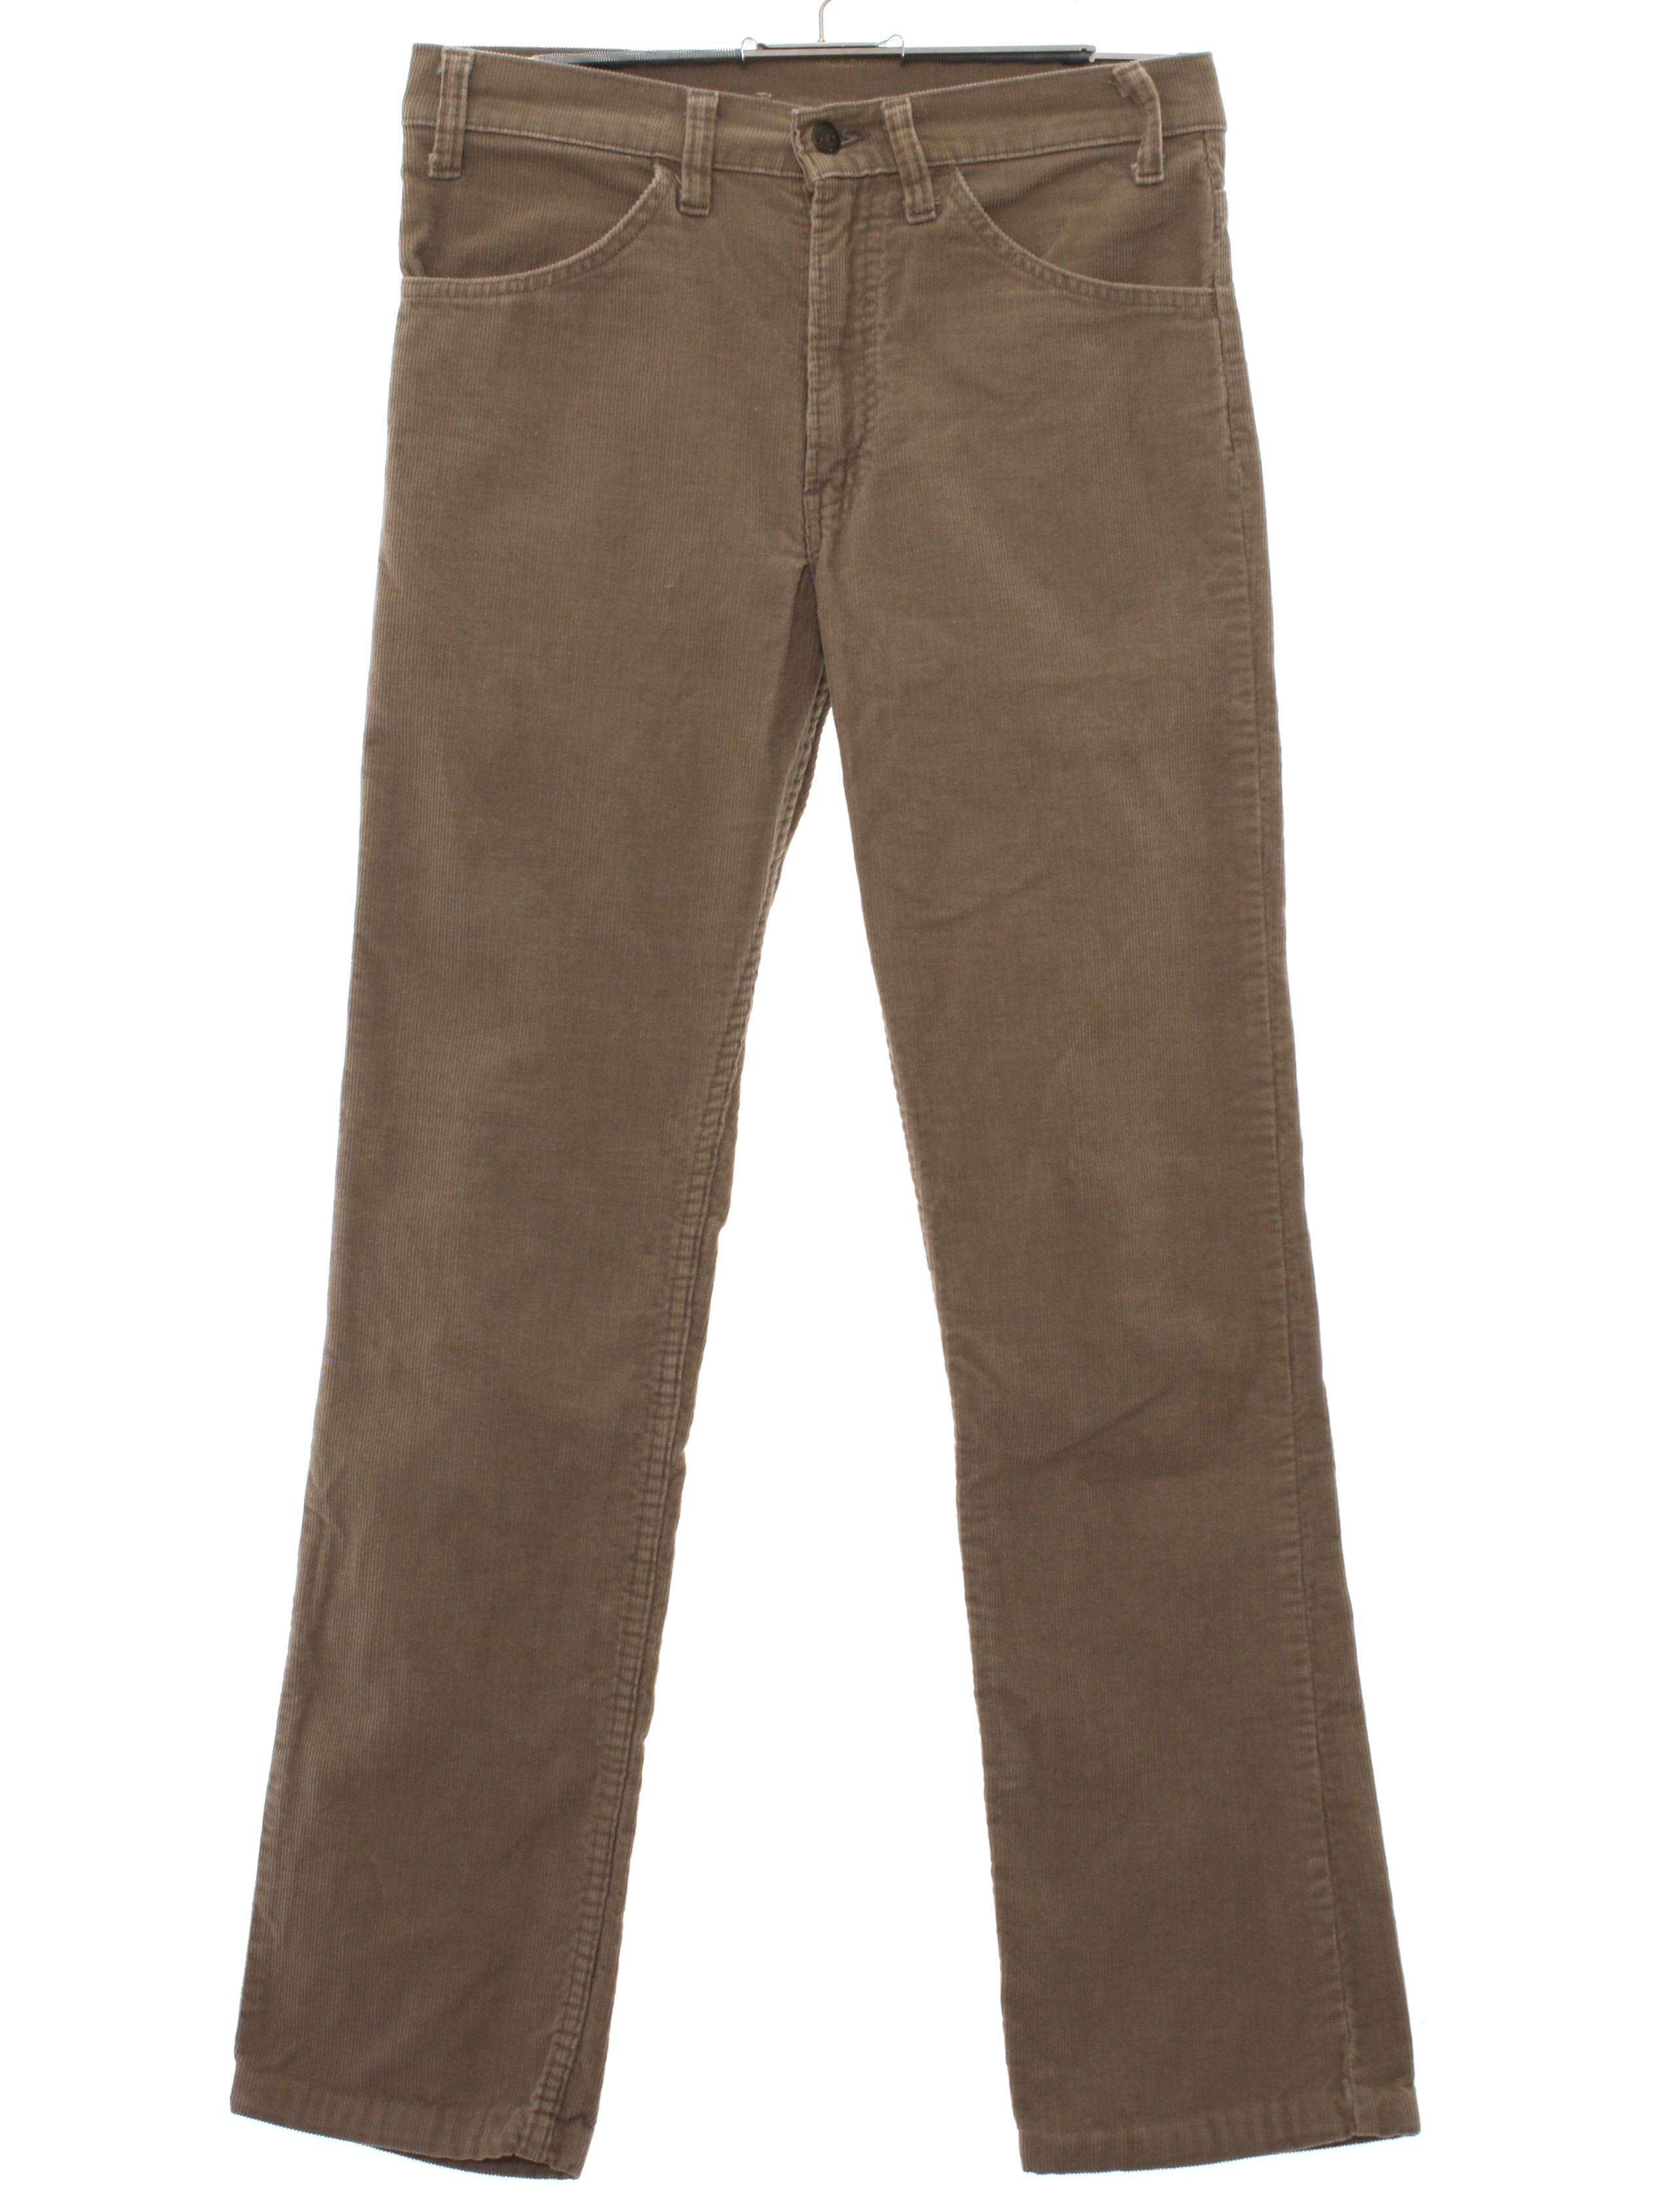 Retro 1980's Pants (Levis) : 80s -Levis- Mens tan cotton corduroy flat ...